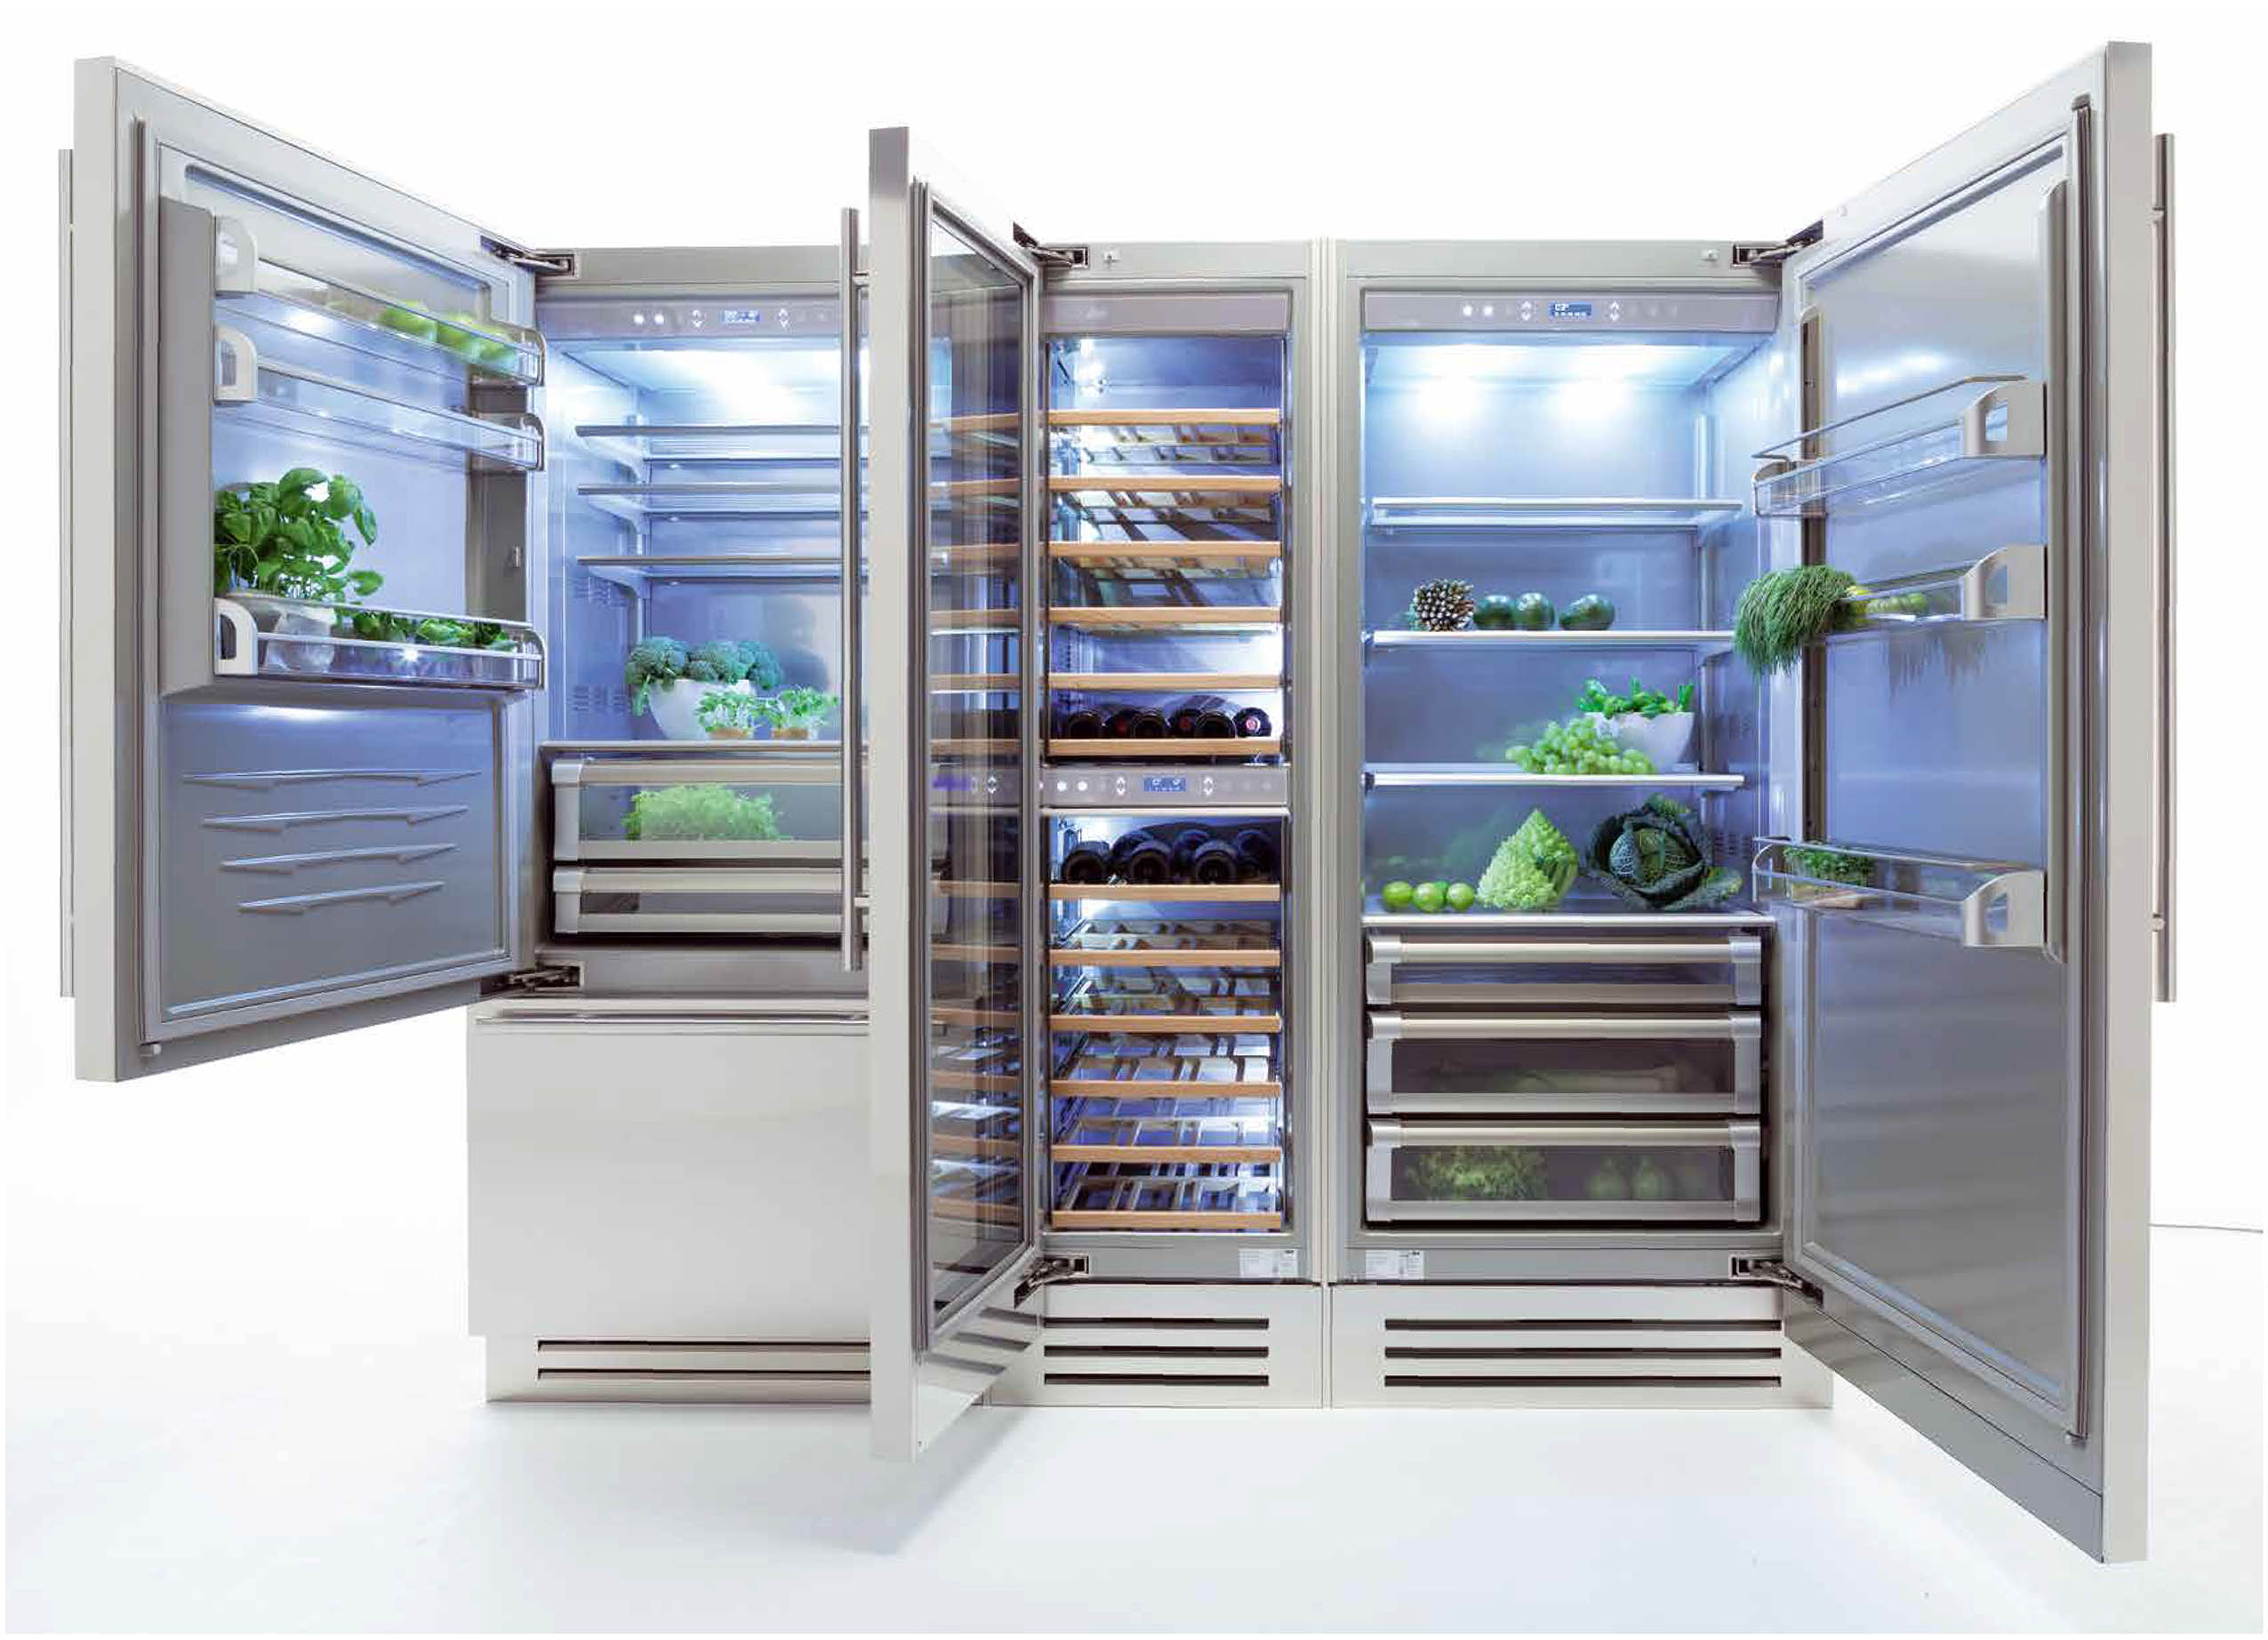 Официальные производители холодильников. Холодильник Fhiaba s8990fr6. Встраиваемый холодильник Fhiaba m8991tgt6. Fhiaba ks8990fr6. Холодильник Fhiaba x15990otw6.